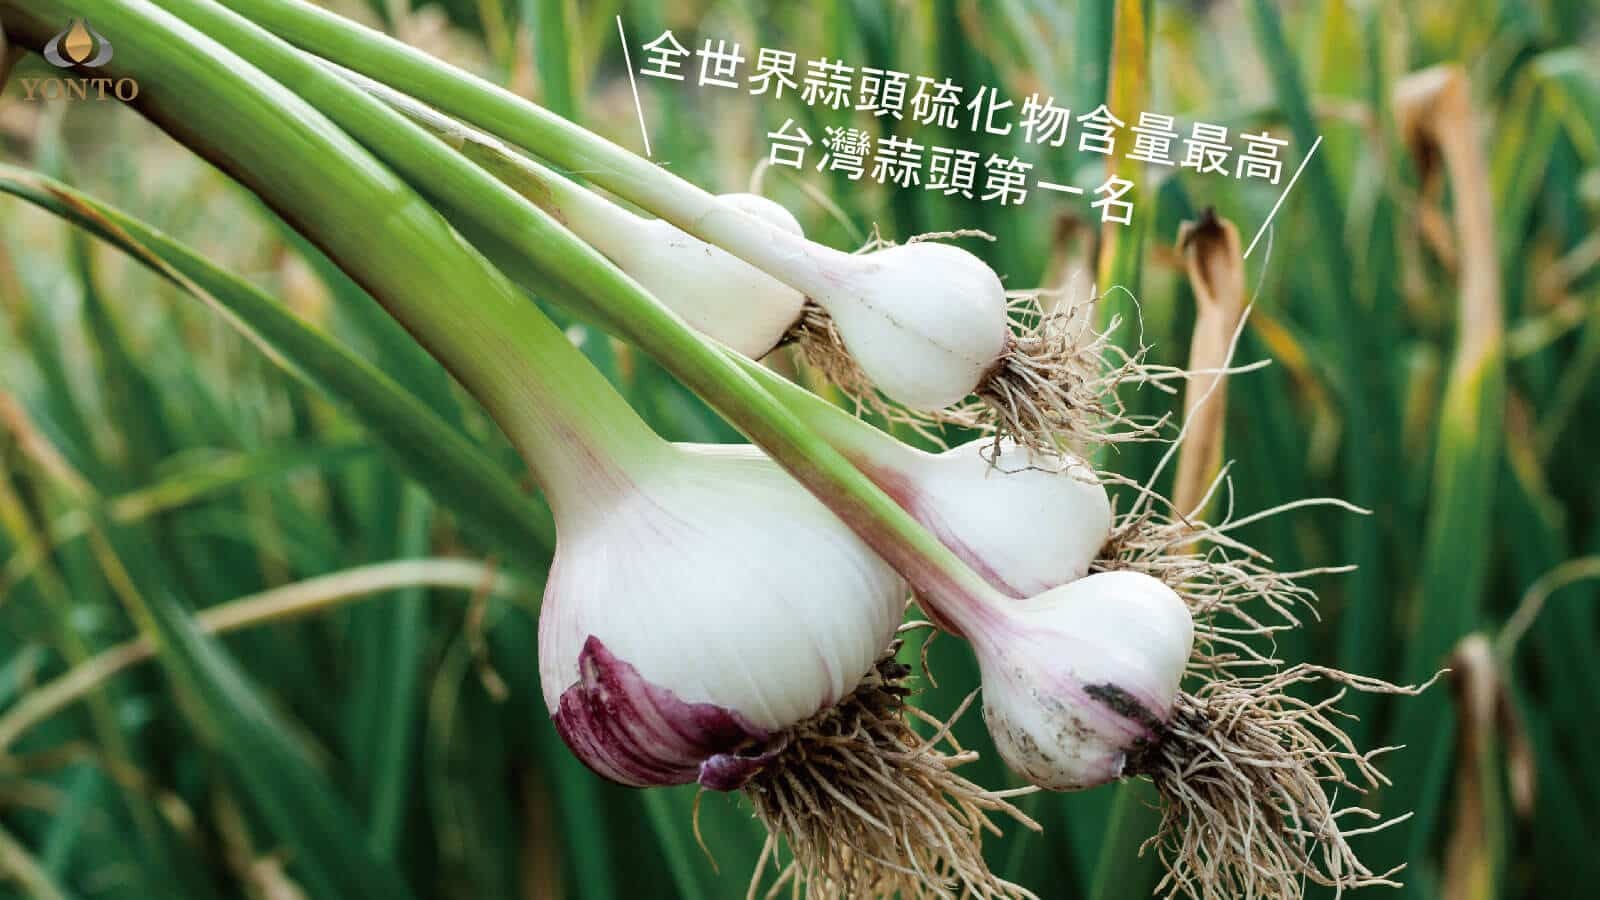 詠統黑蒜頭的製作使用台灣在地蒜頭,做出最好的黑蒜頭